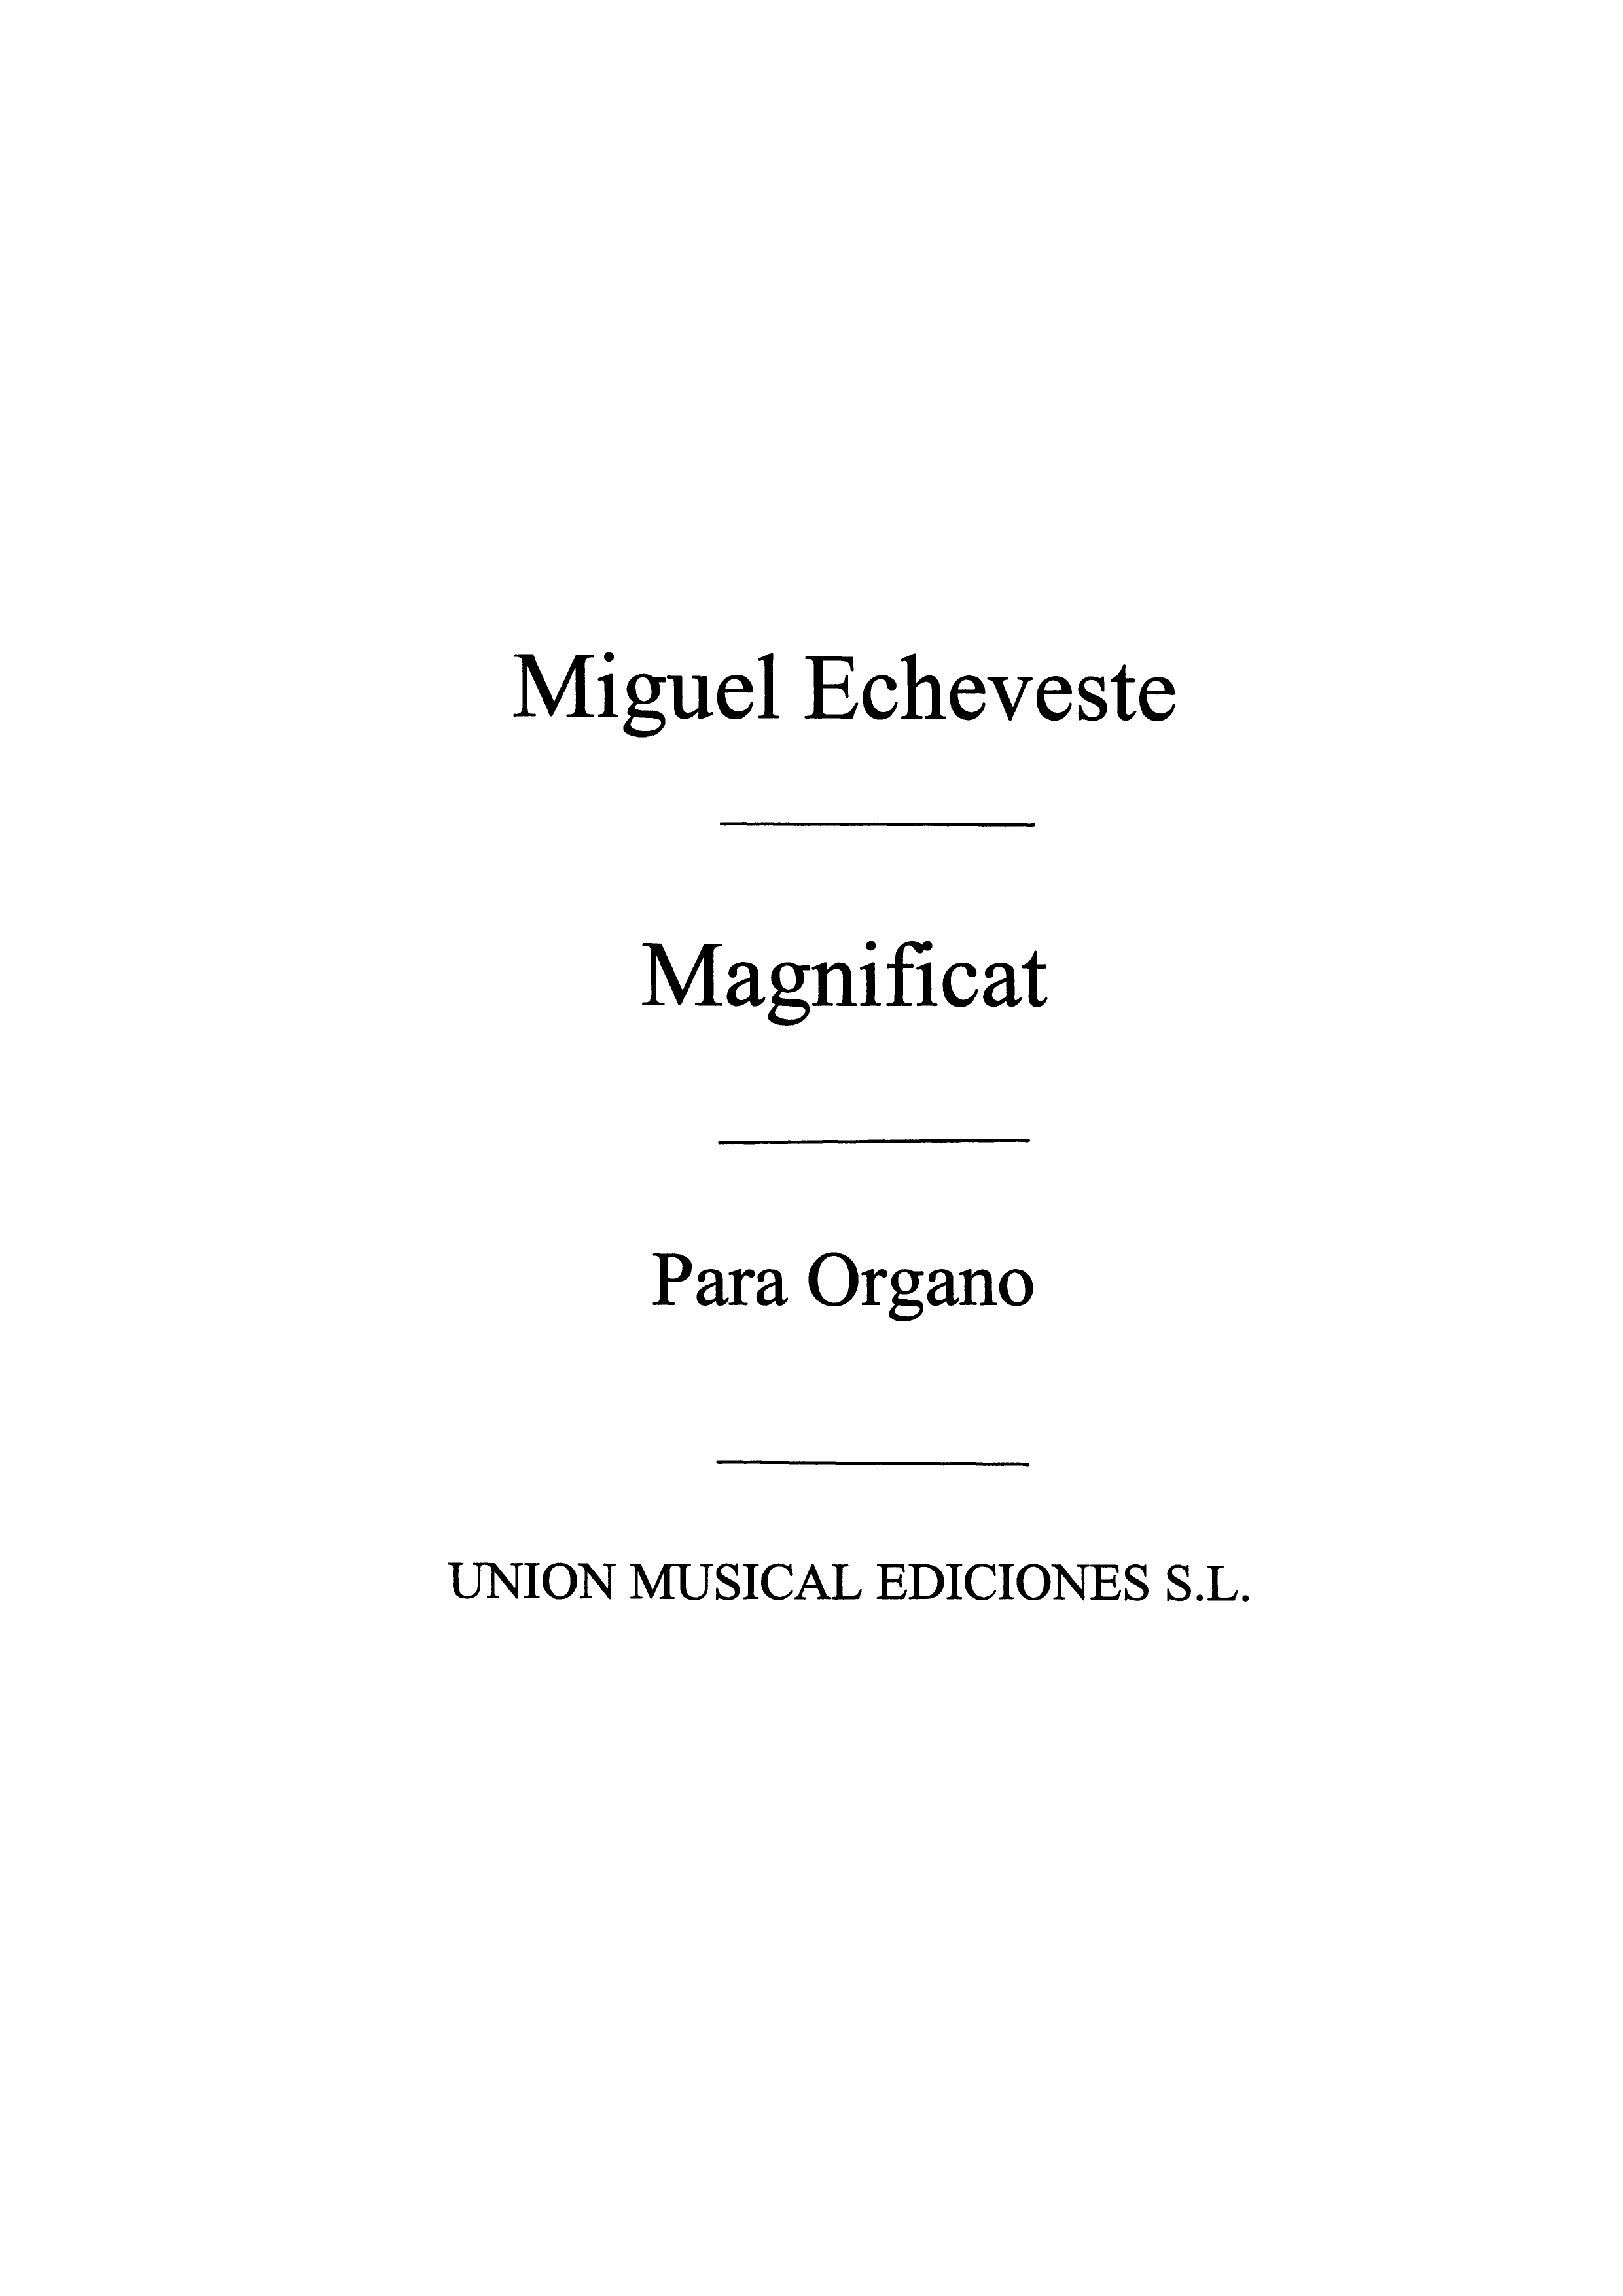 Miguel Echeveste: Magnificat Variaciones: Organ: Instrumental Work